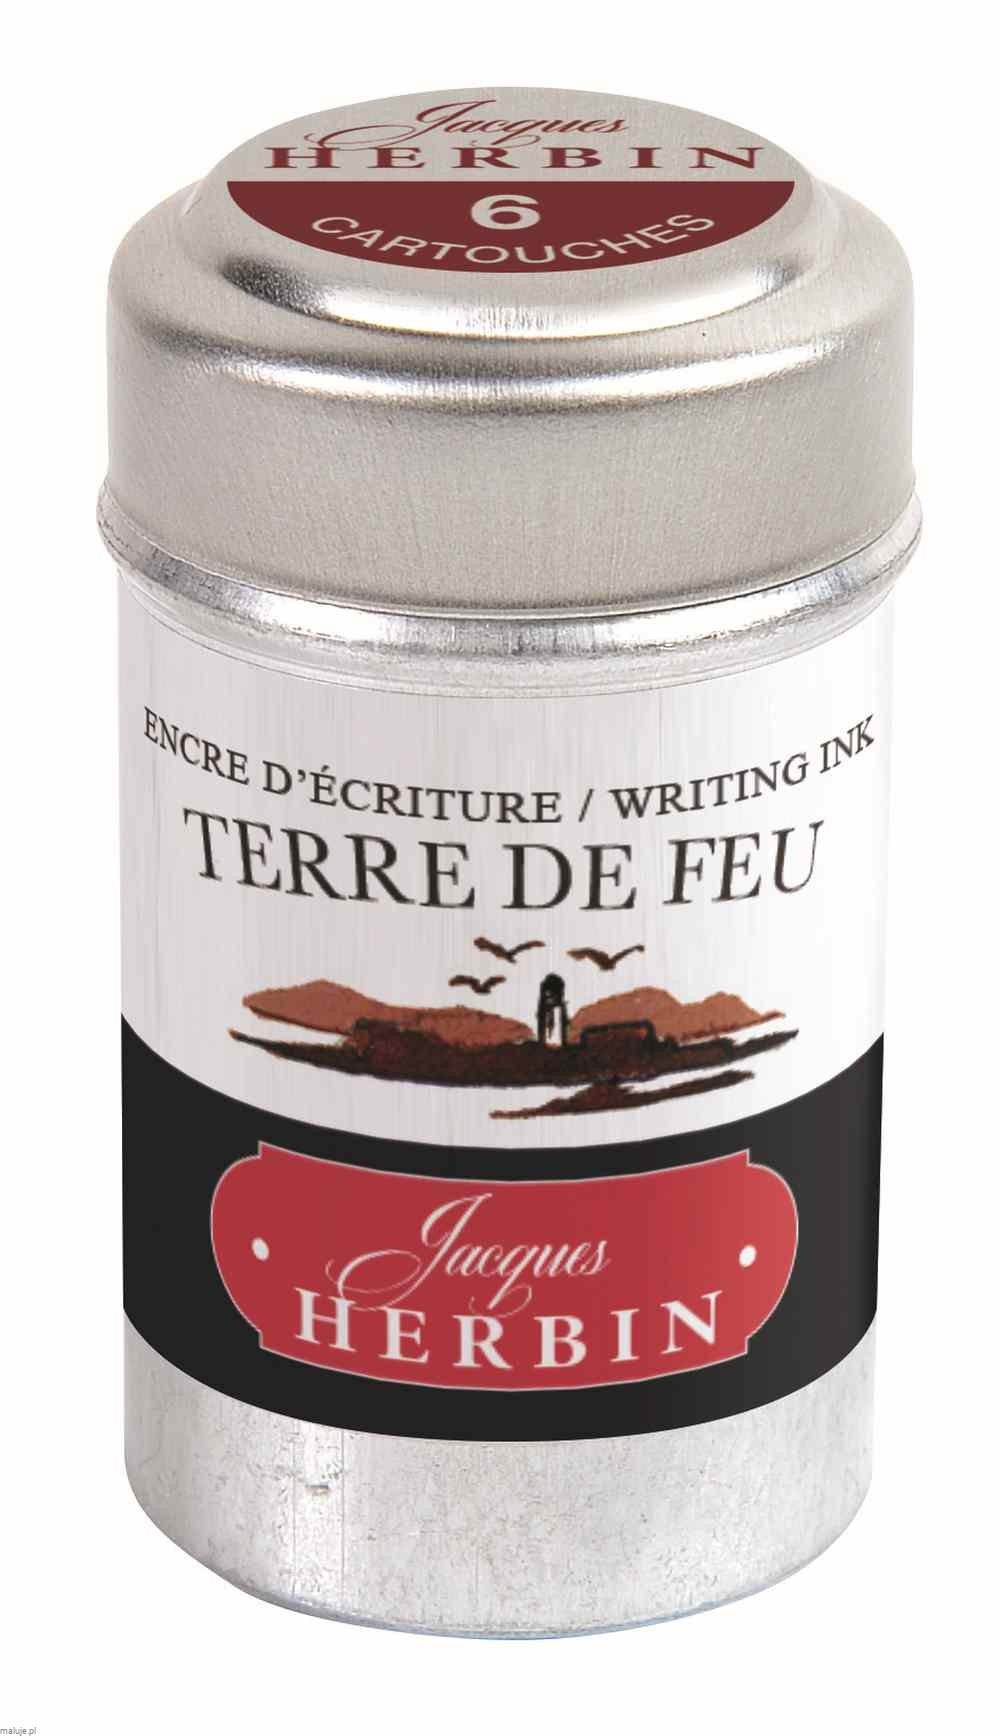 Naboje J.Herbin Writing Ink Terre de feu 6szt - naboje z atramentem do piór wiecznych